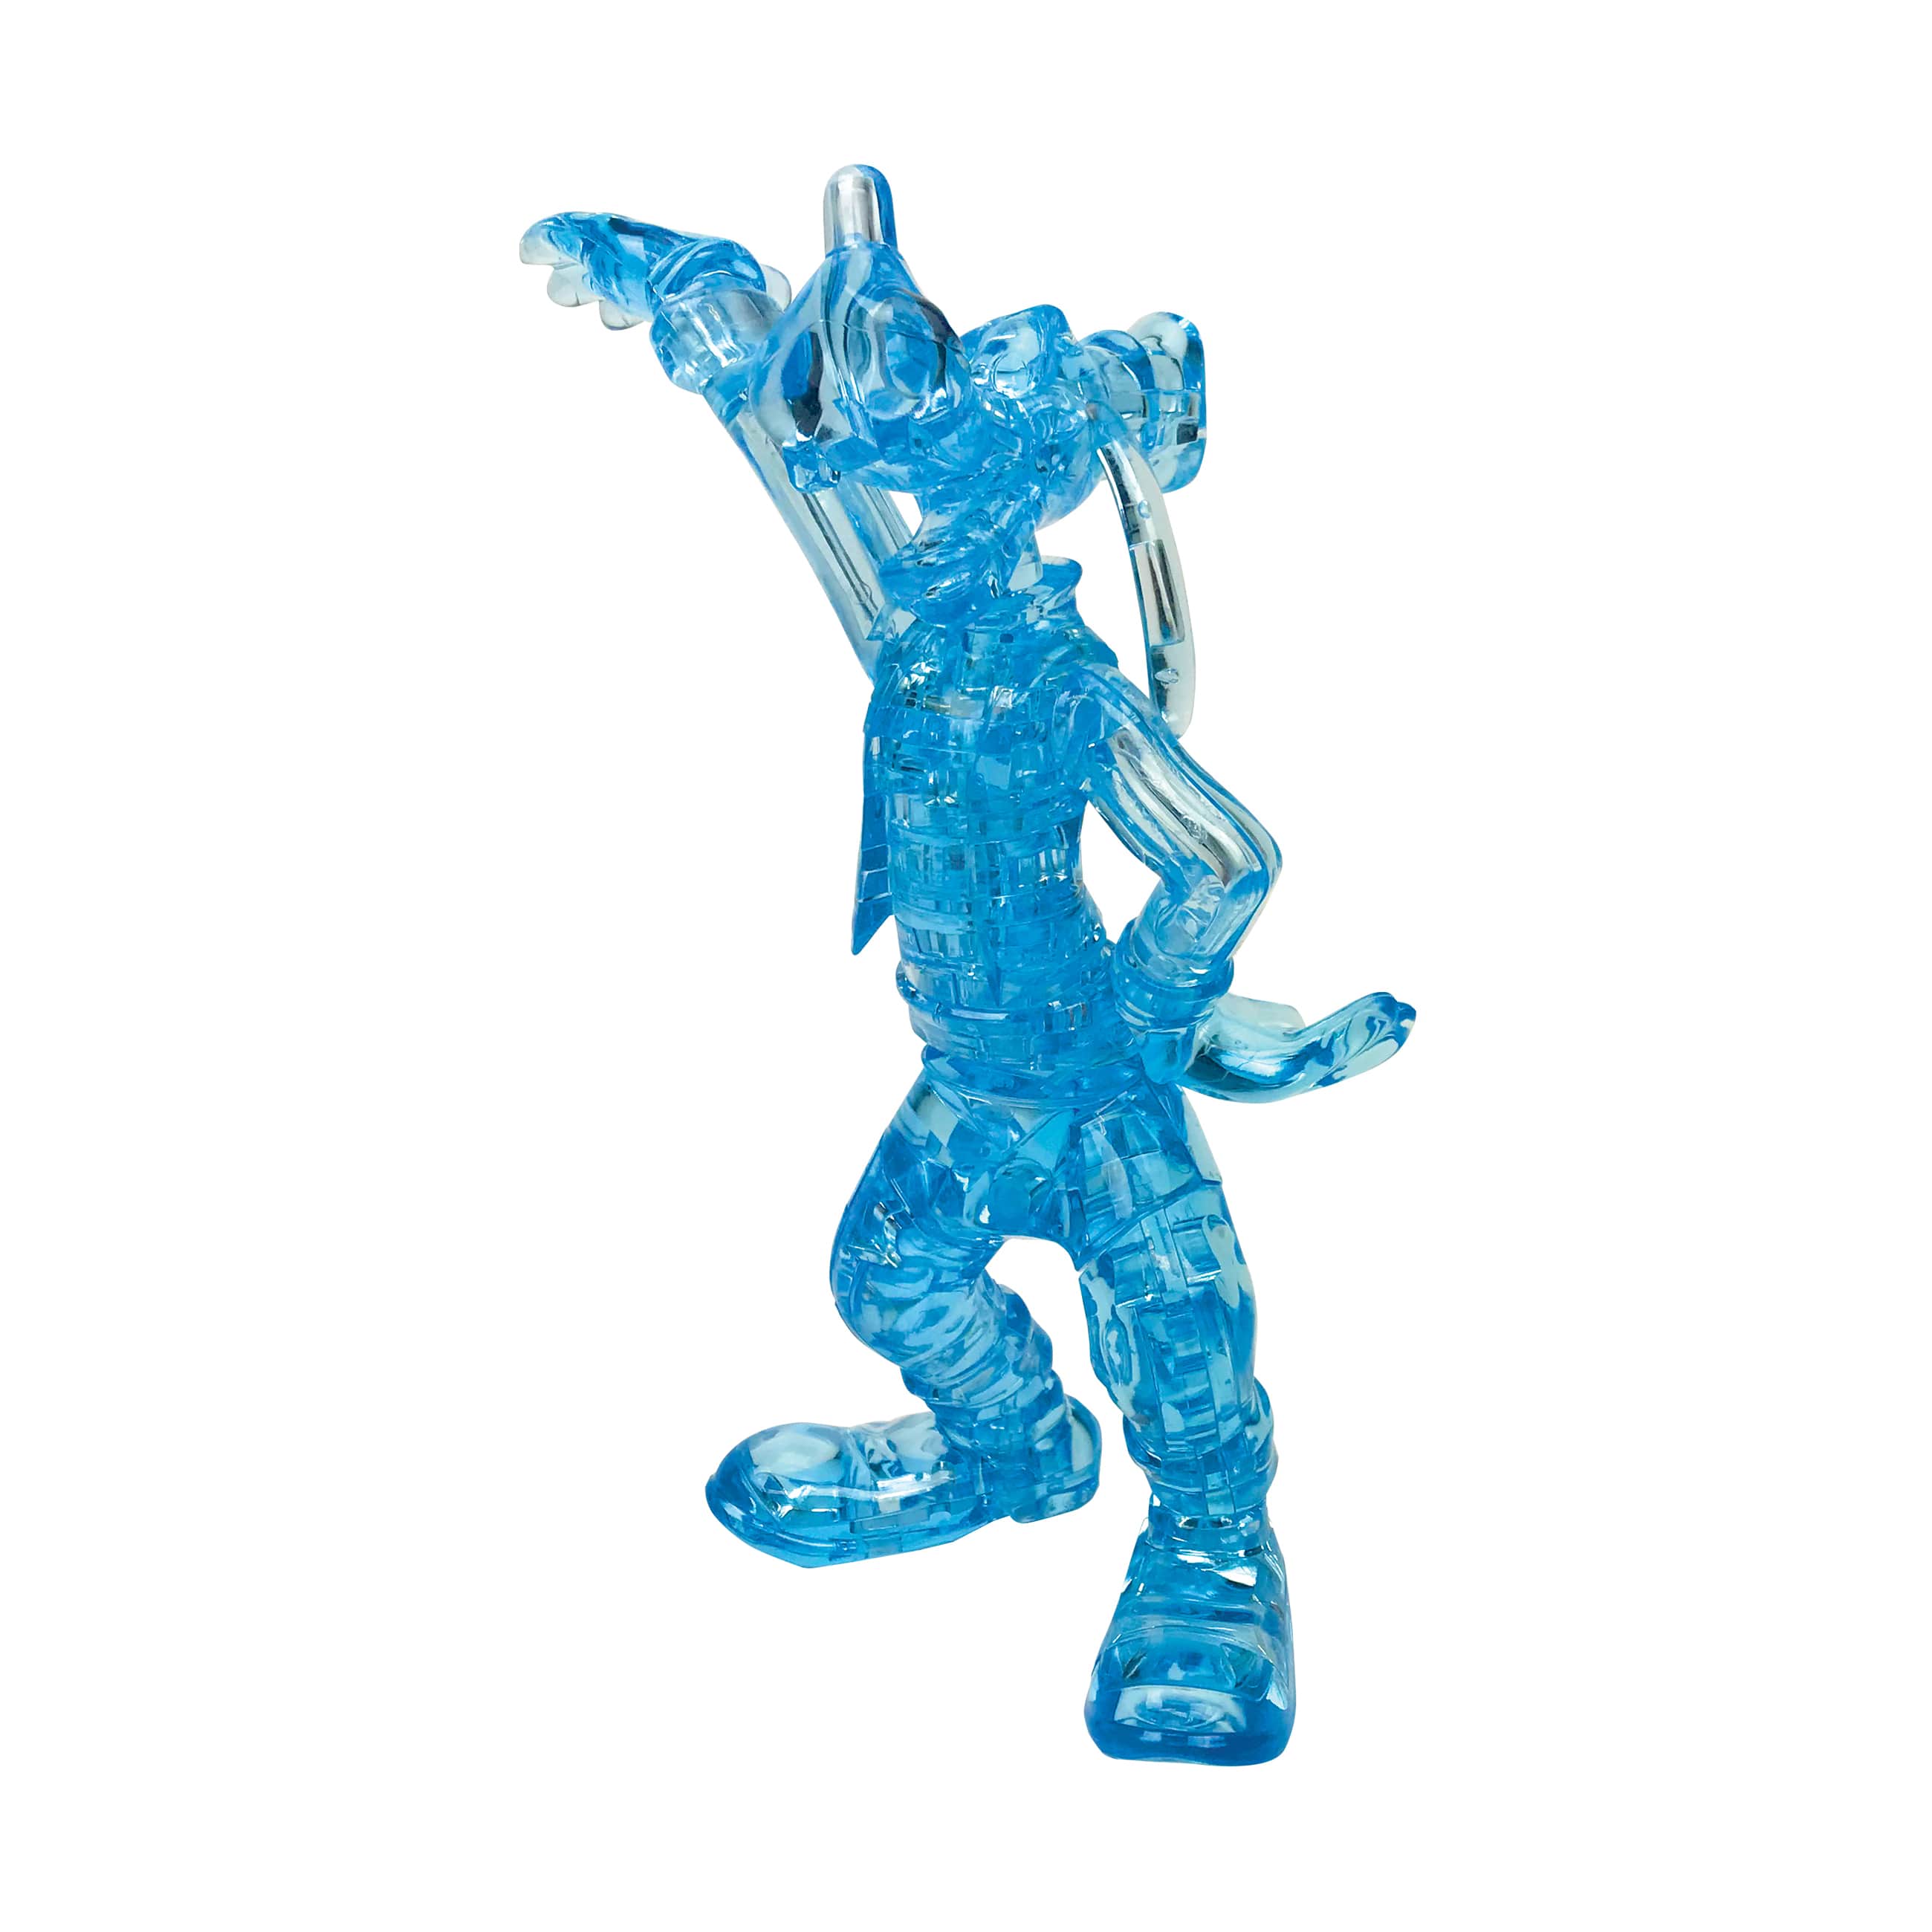 3D Crystal Puzzle - Disney Goofy (Blue): 38 Pcs